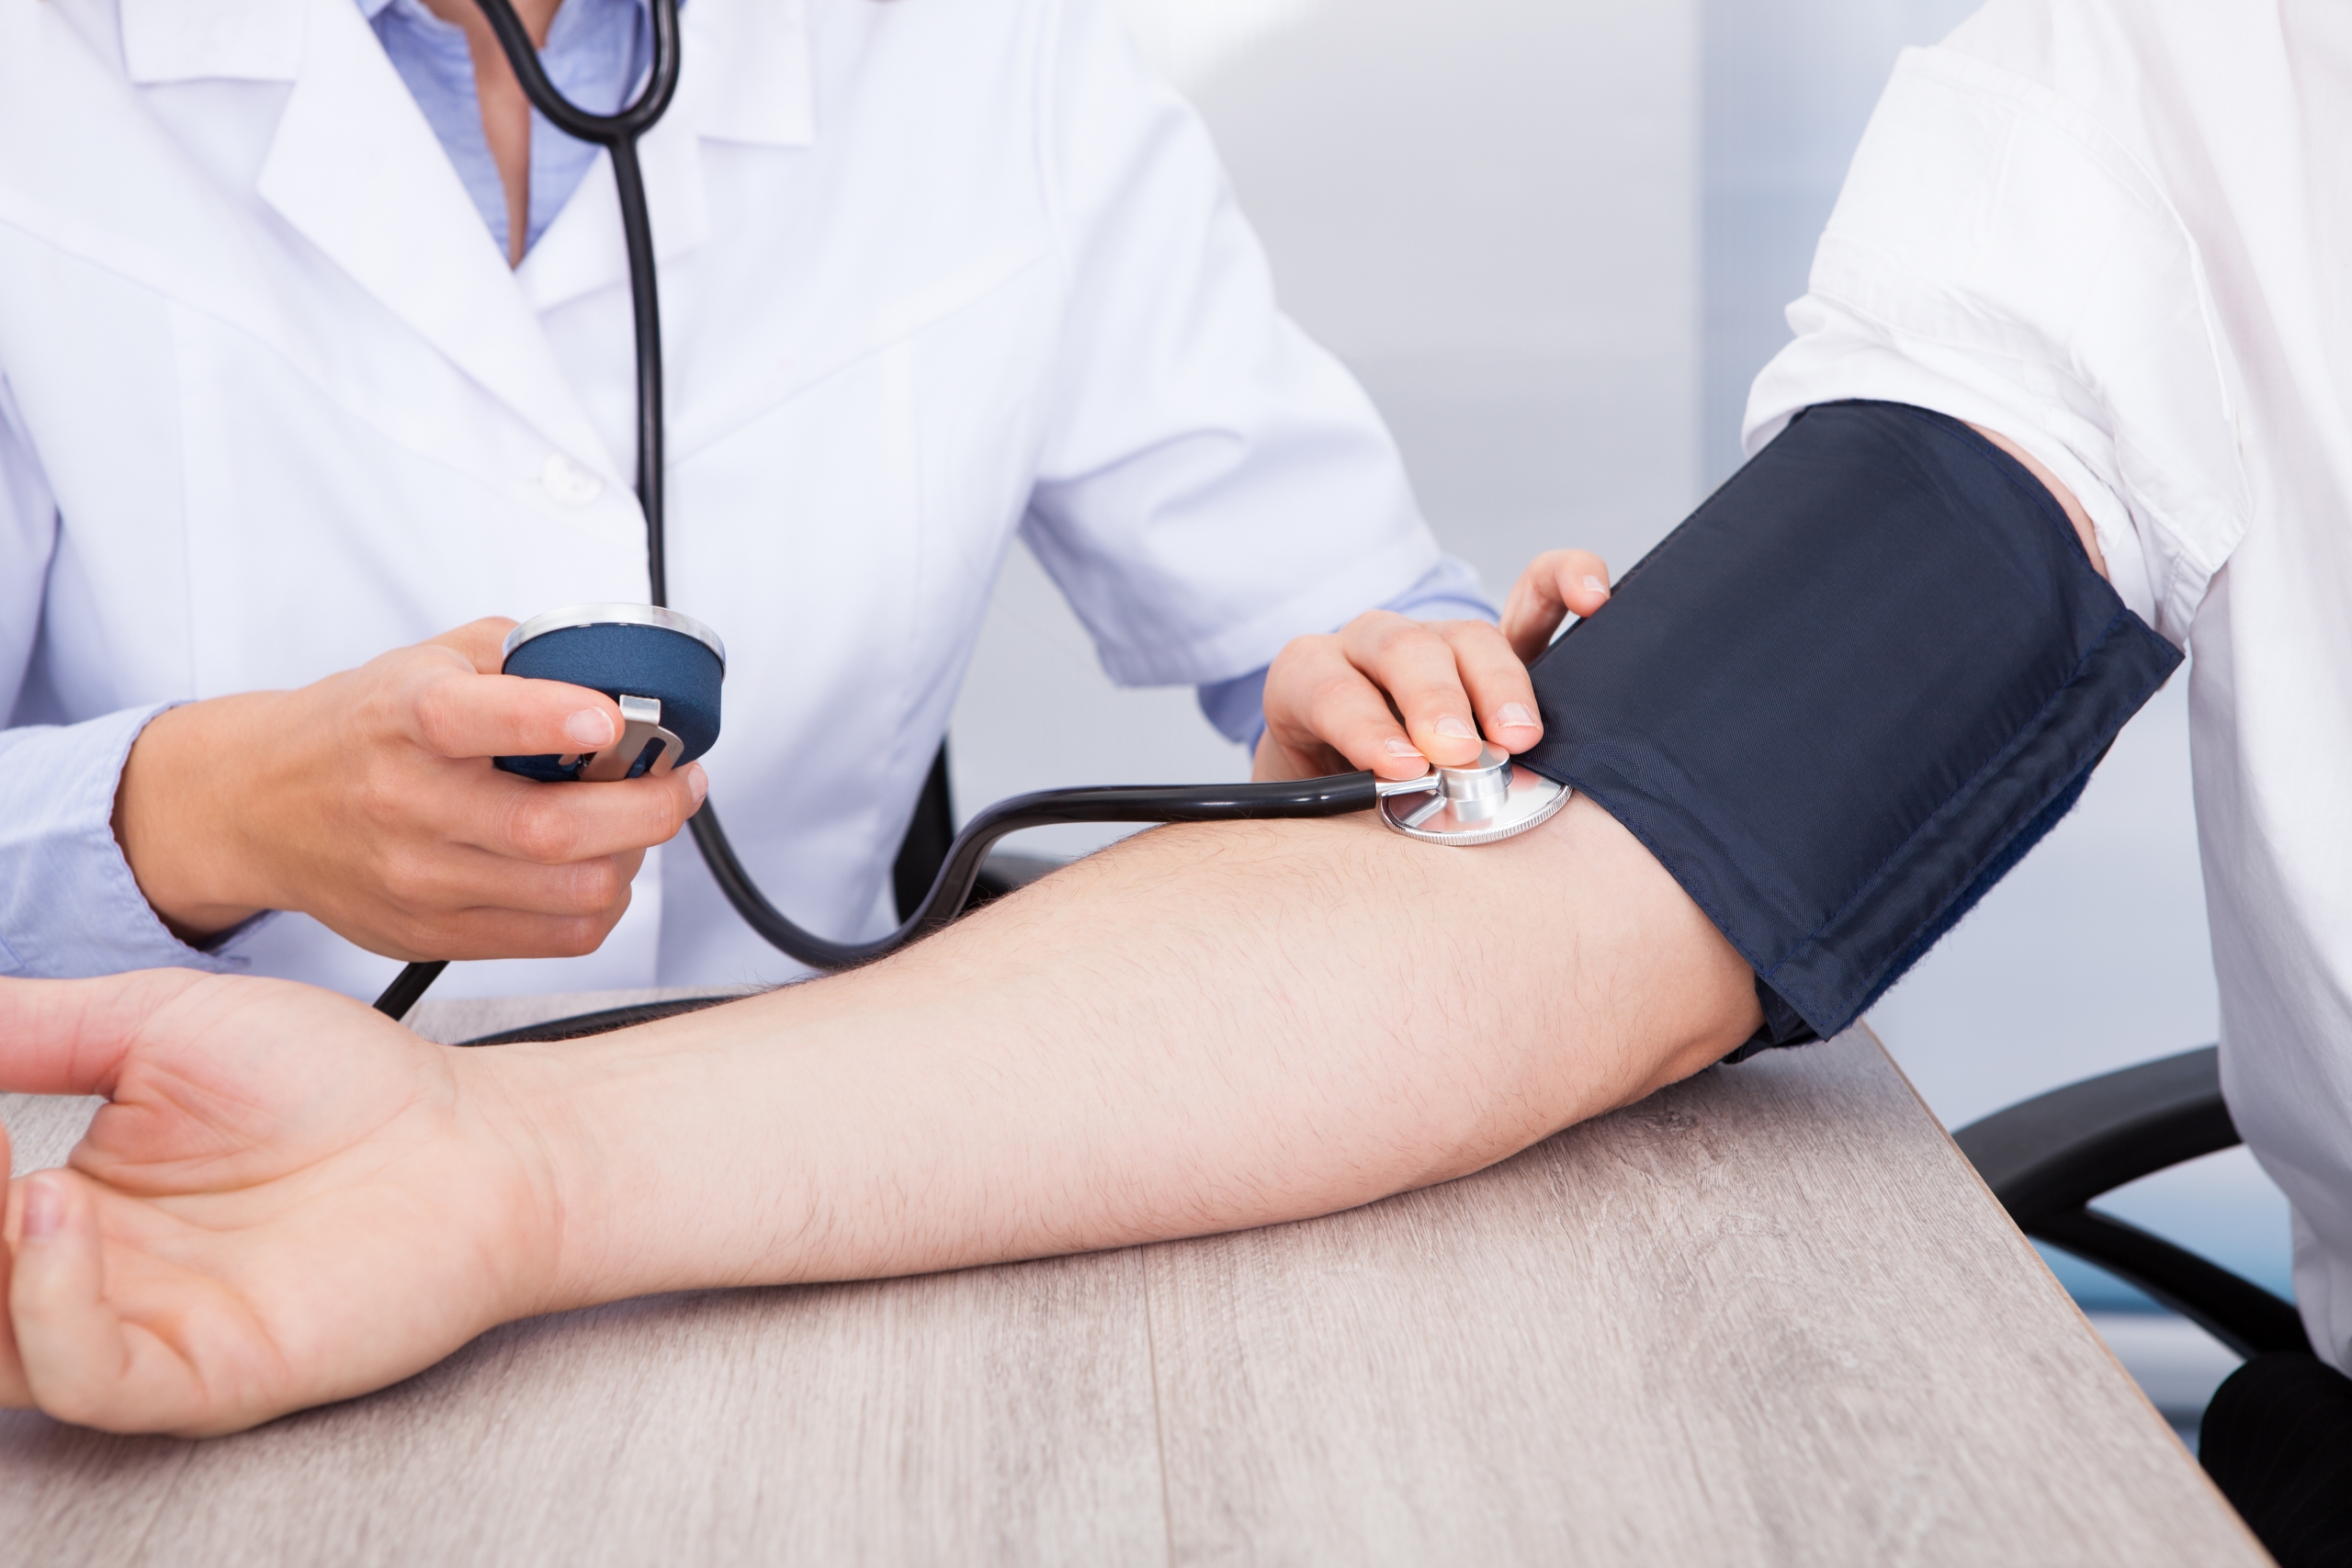 hipertenzija invalidnosti kako podići niski krvni tlak